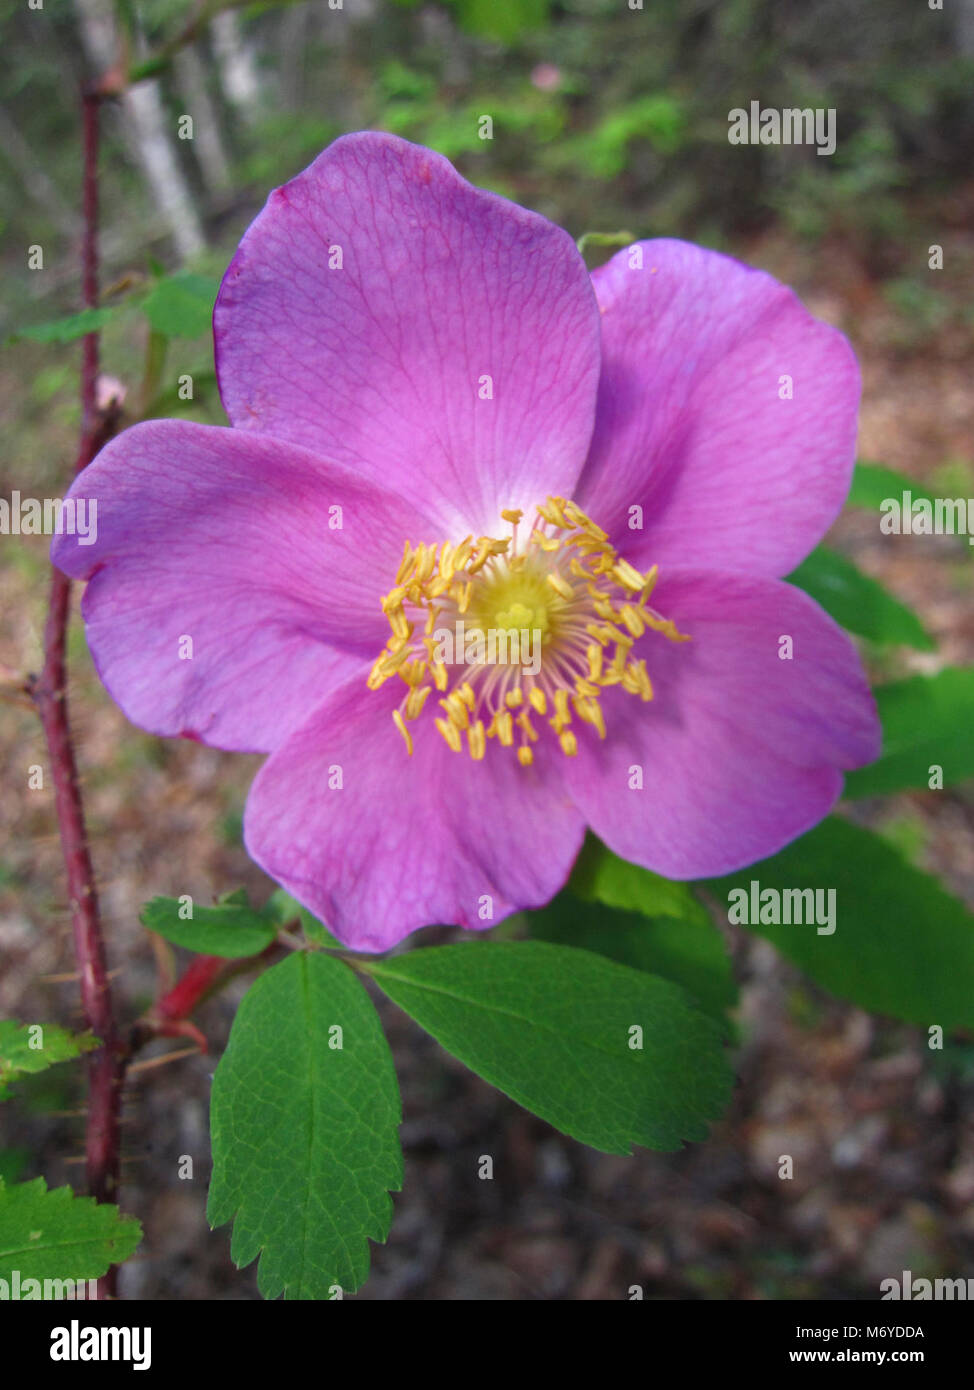 La rosa selvatica (Rosa acicularis) . La rosa selvatica, noto anche come l'artico rose, si contraddistingue per la luce rosa petali arrotondati. Foto Stock